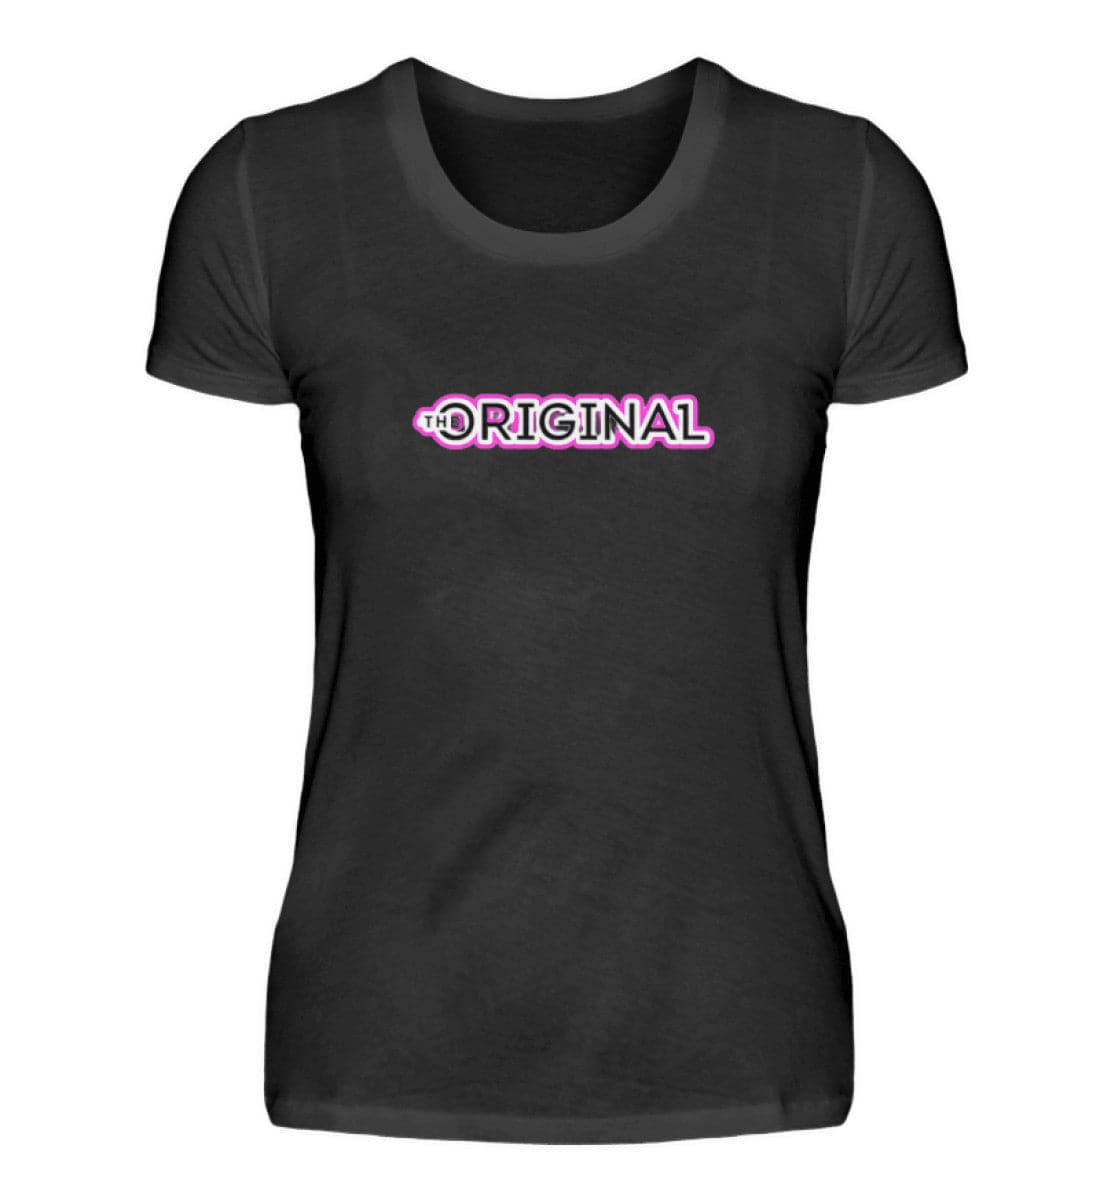 The Original One Rebel T-shirt | The Original One